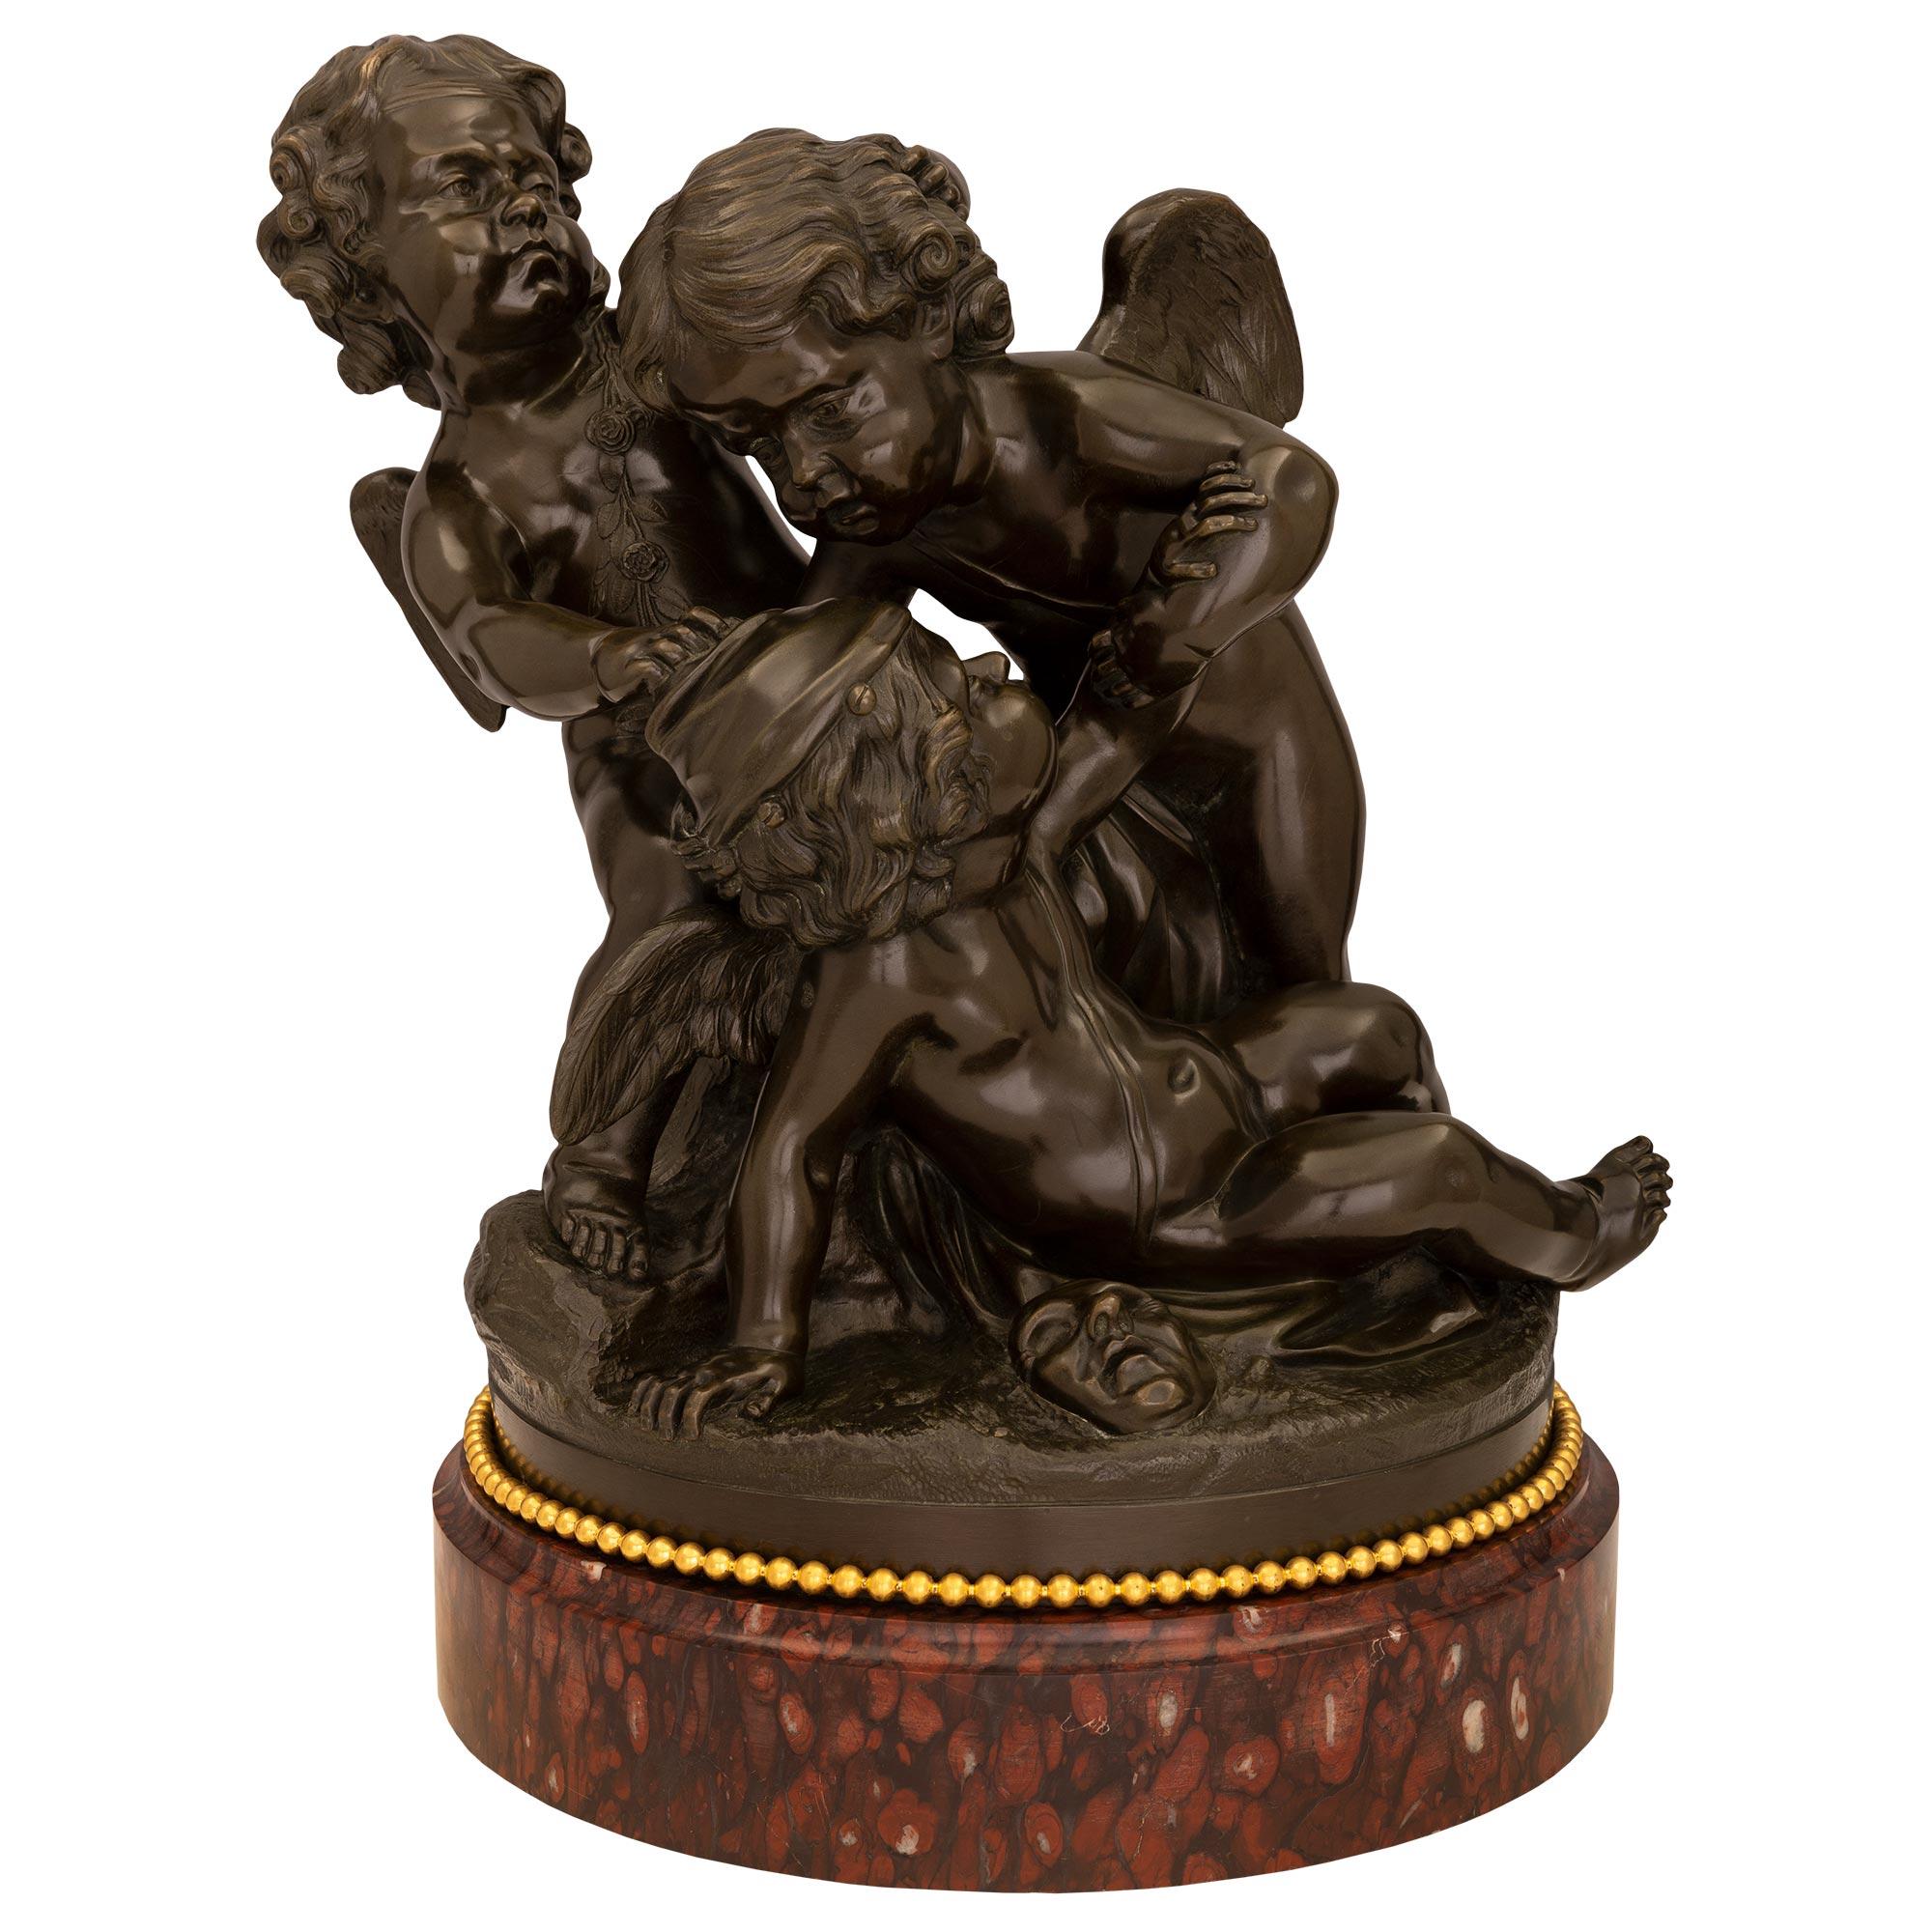 Charmante statue française du milieu du XIXe siècle, de style Louis XVI, en bronze patiné, bronze doré et marbre, d'après Clodion. La statue est surélevée par un épais socle en marbre Rouge Griotte décoré d'une bande perlée en bronze doré. Le bronze